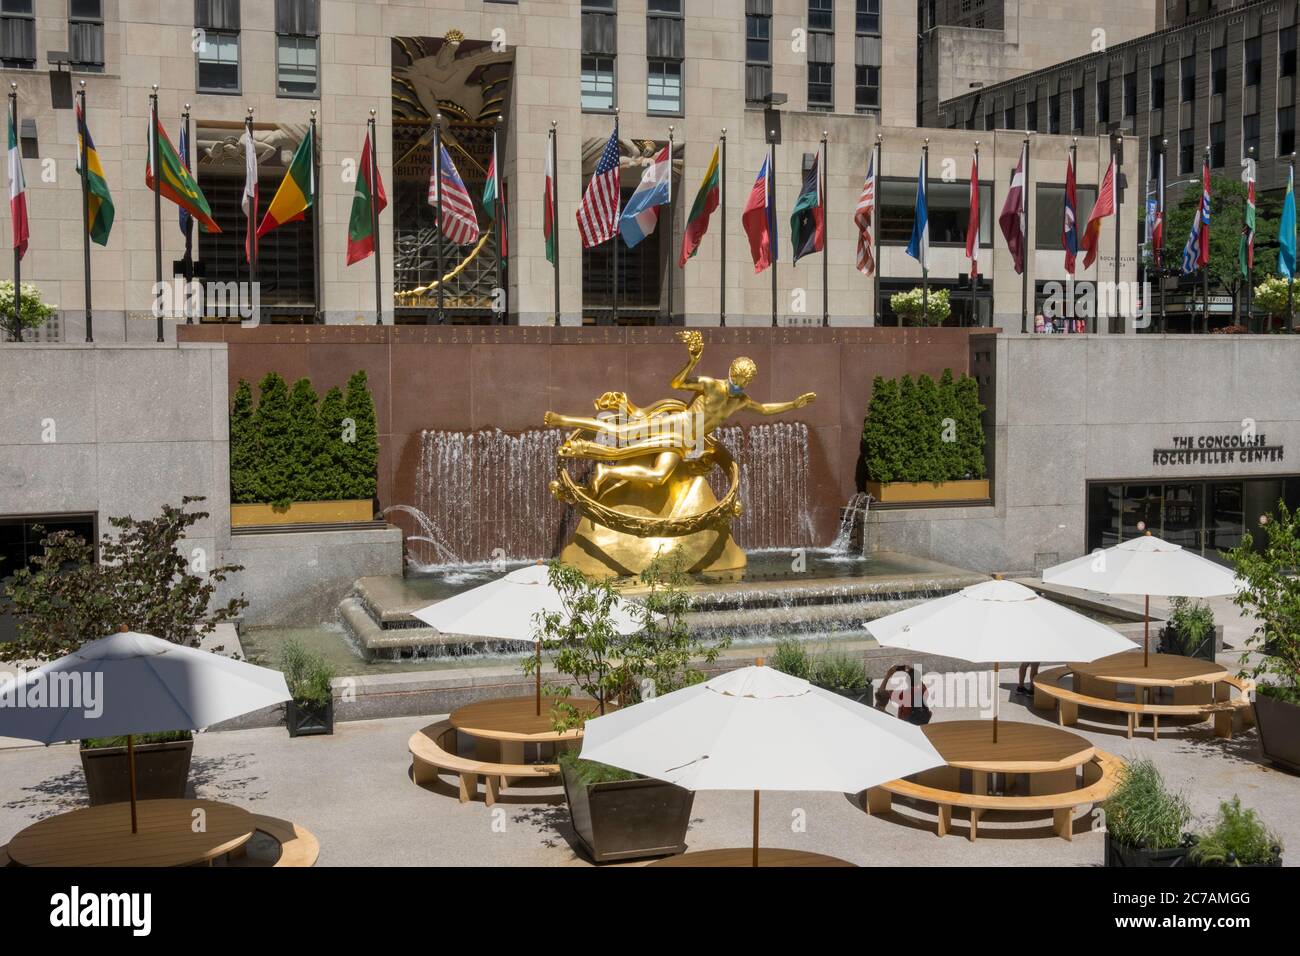 Prométhée au Rockefeller Center porte un masque facial en raison de la pandémie Covid-19, et la plaza a été réaménagé pour la distanciation sociale, NYC, USA Banque D'Images